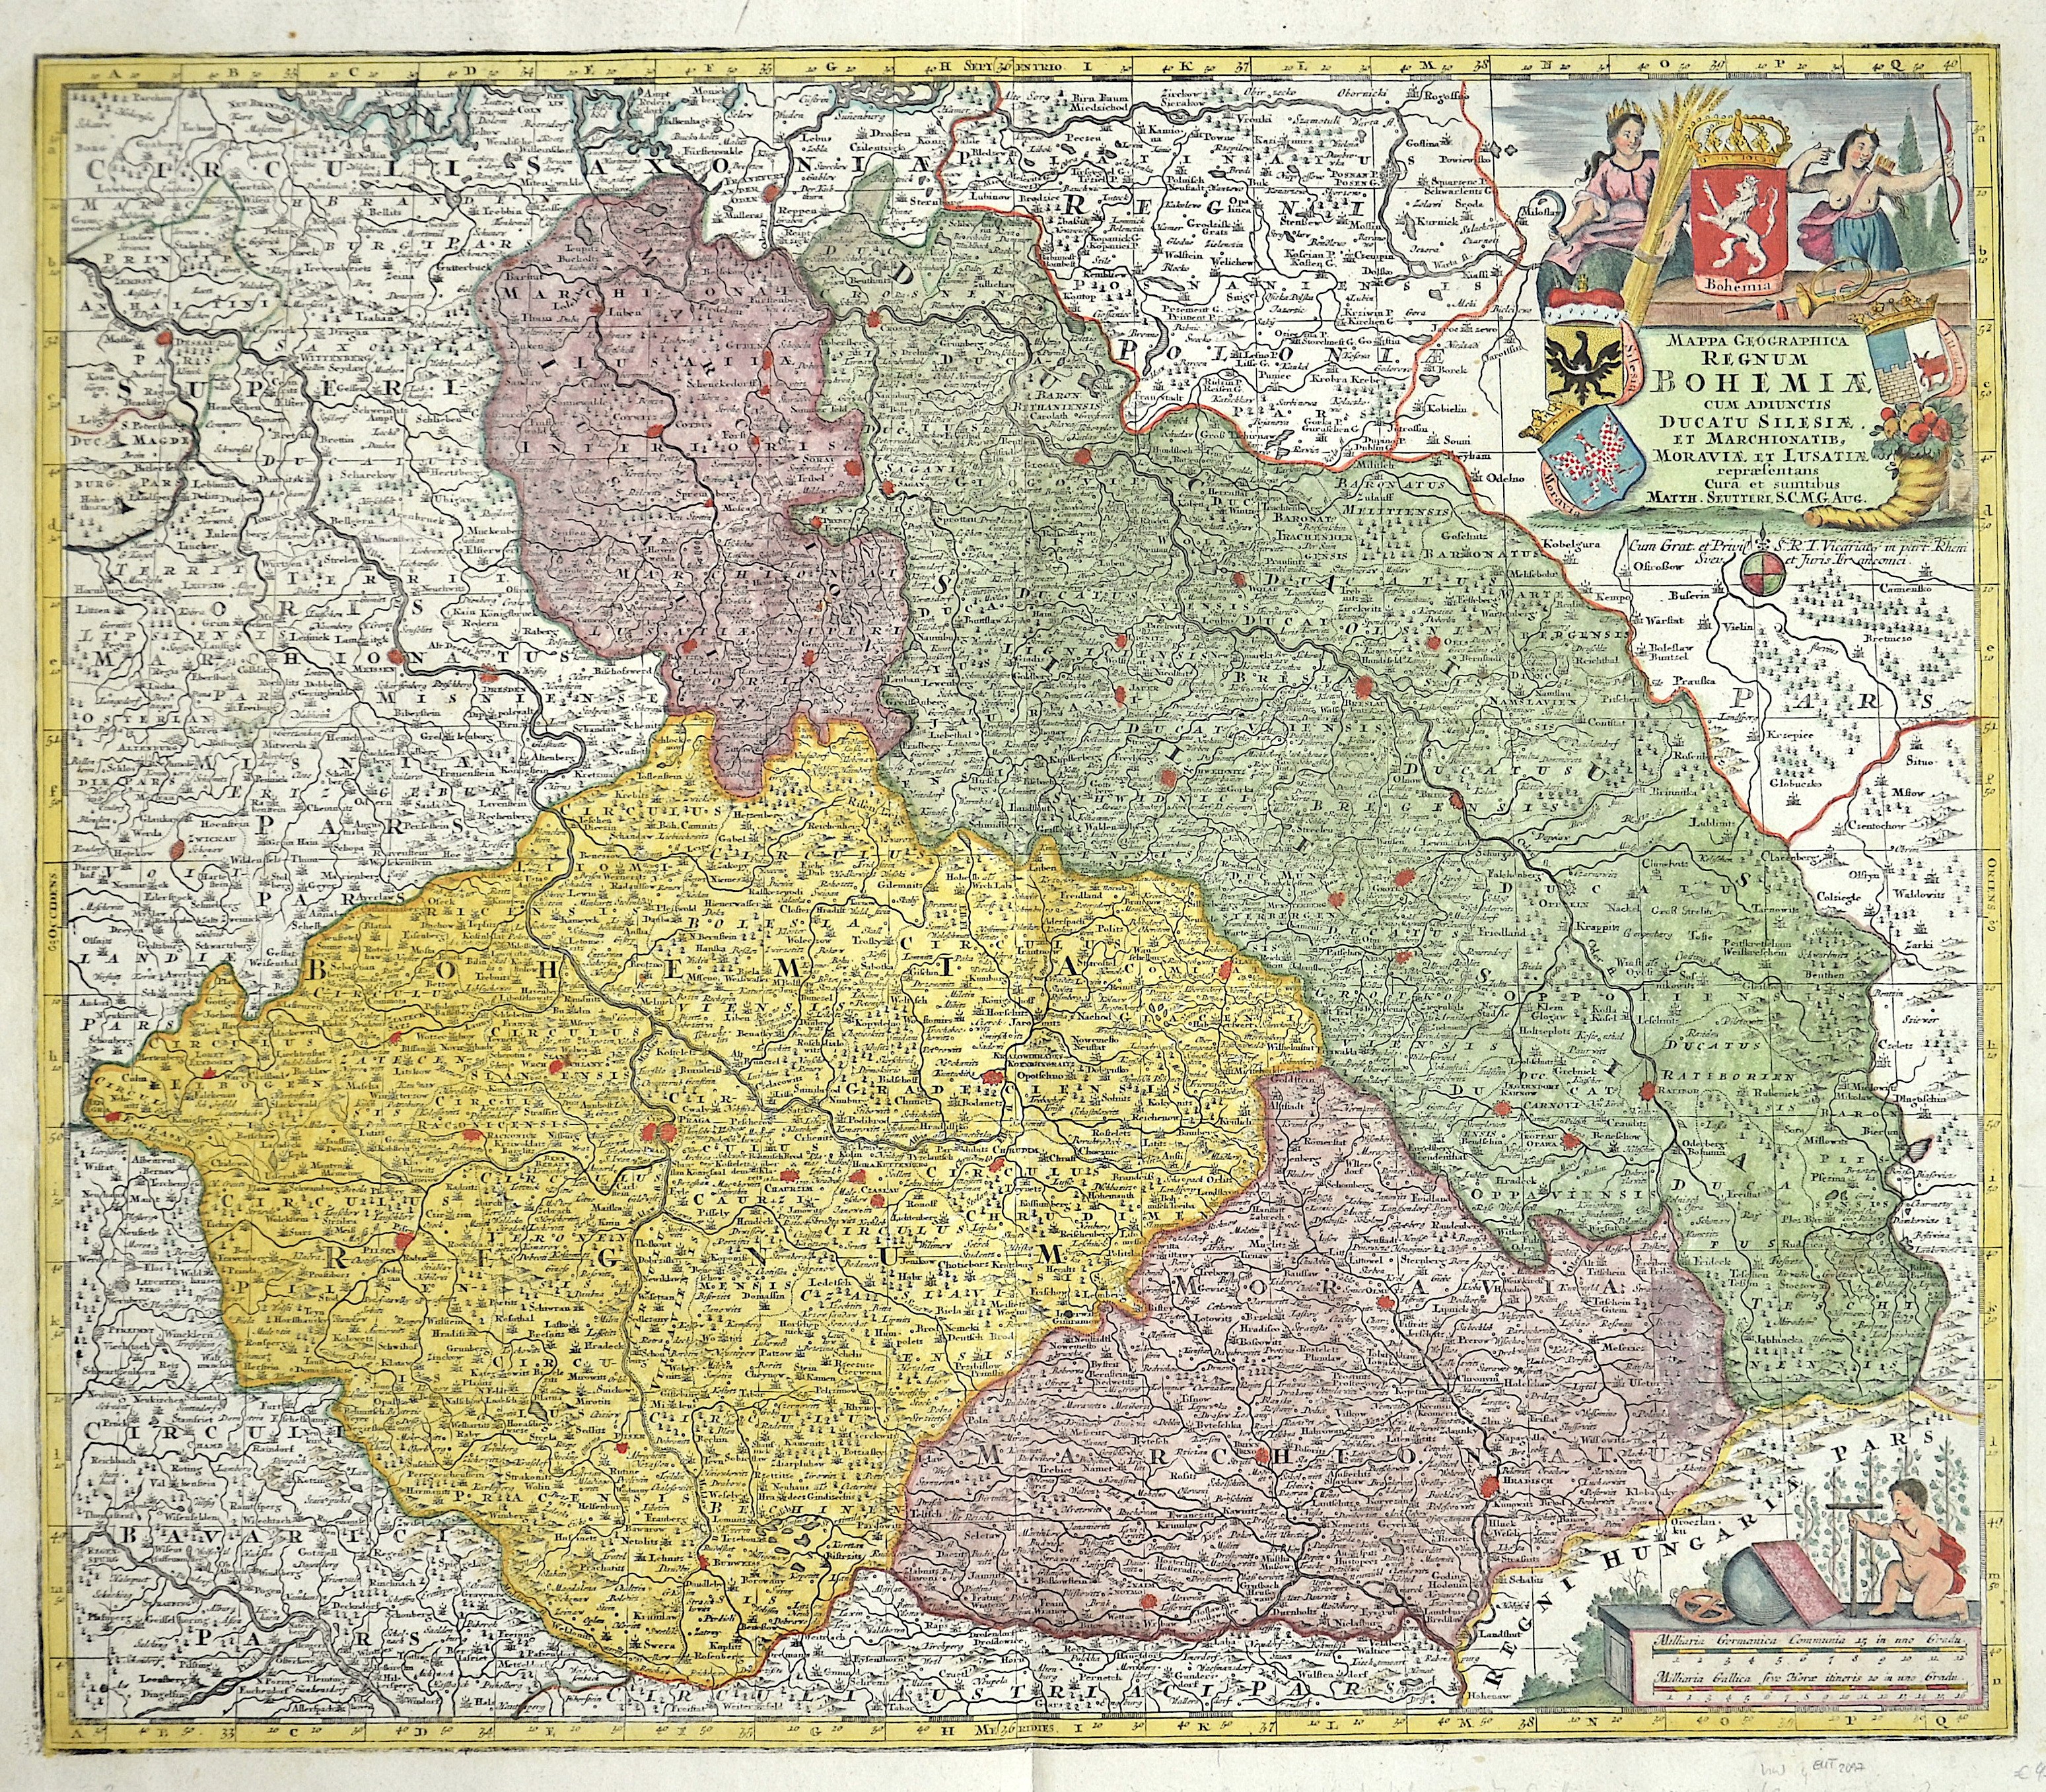 Seutter Matthias Mappa geographica regnum Bohemia cum adjunctis ducatu Silesiae et Marchionatib, Moravia et Lusatiae